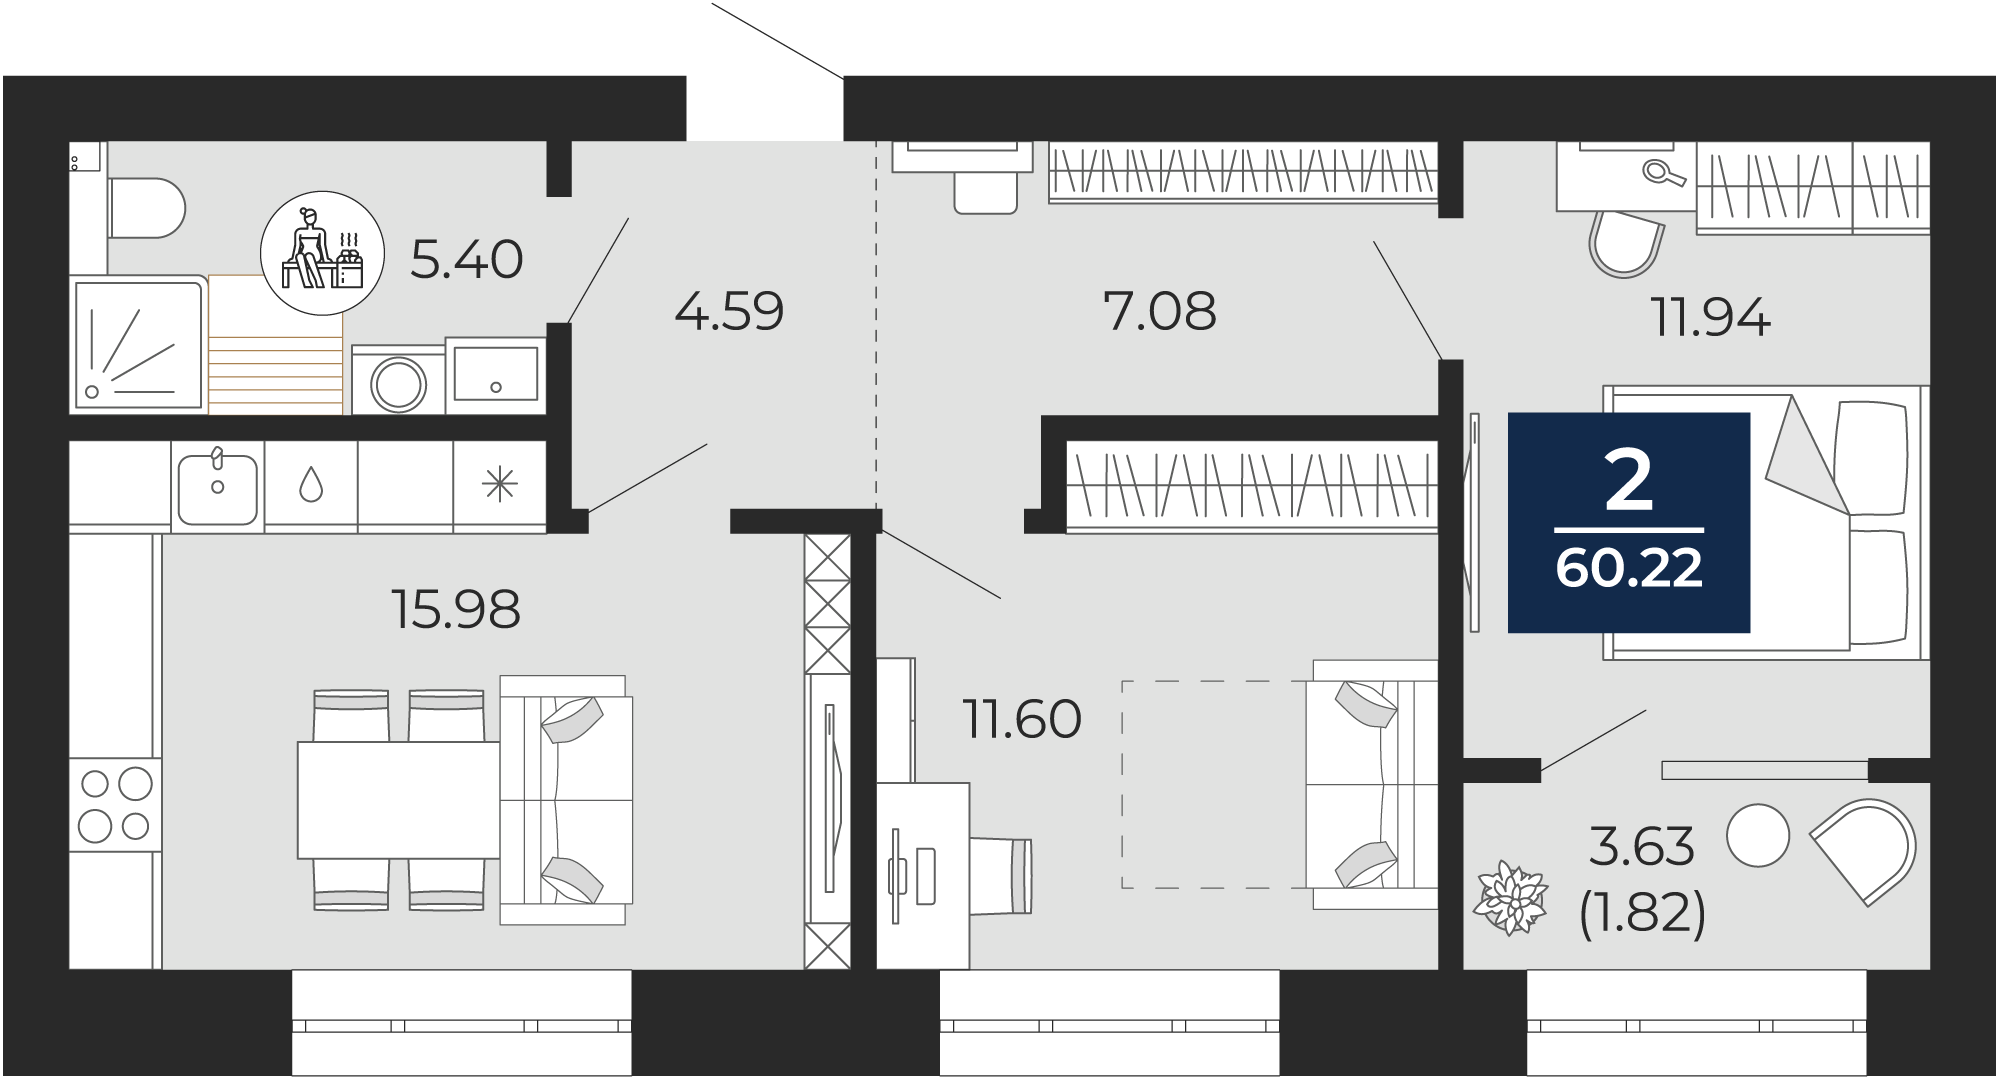 Квартира № 214, 2-комнатная, 60.22 кв. м, 4 этаж